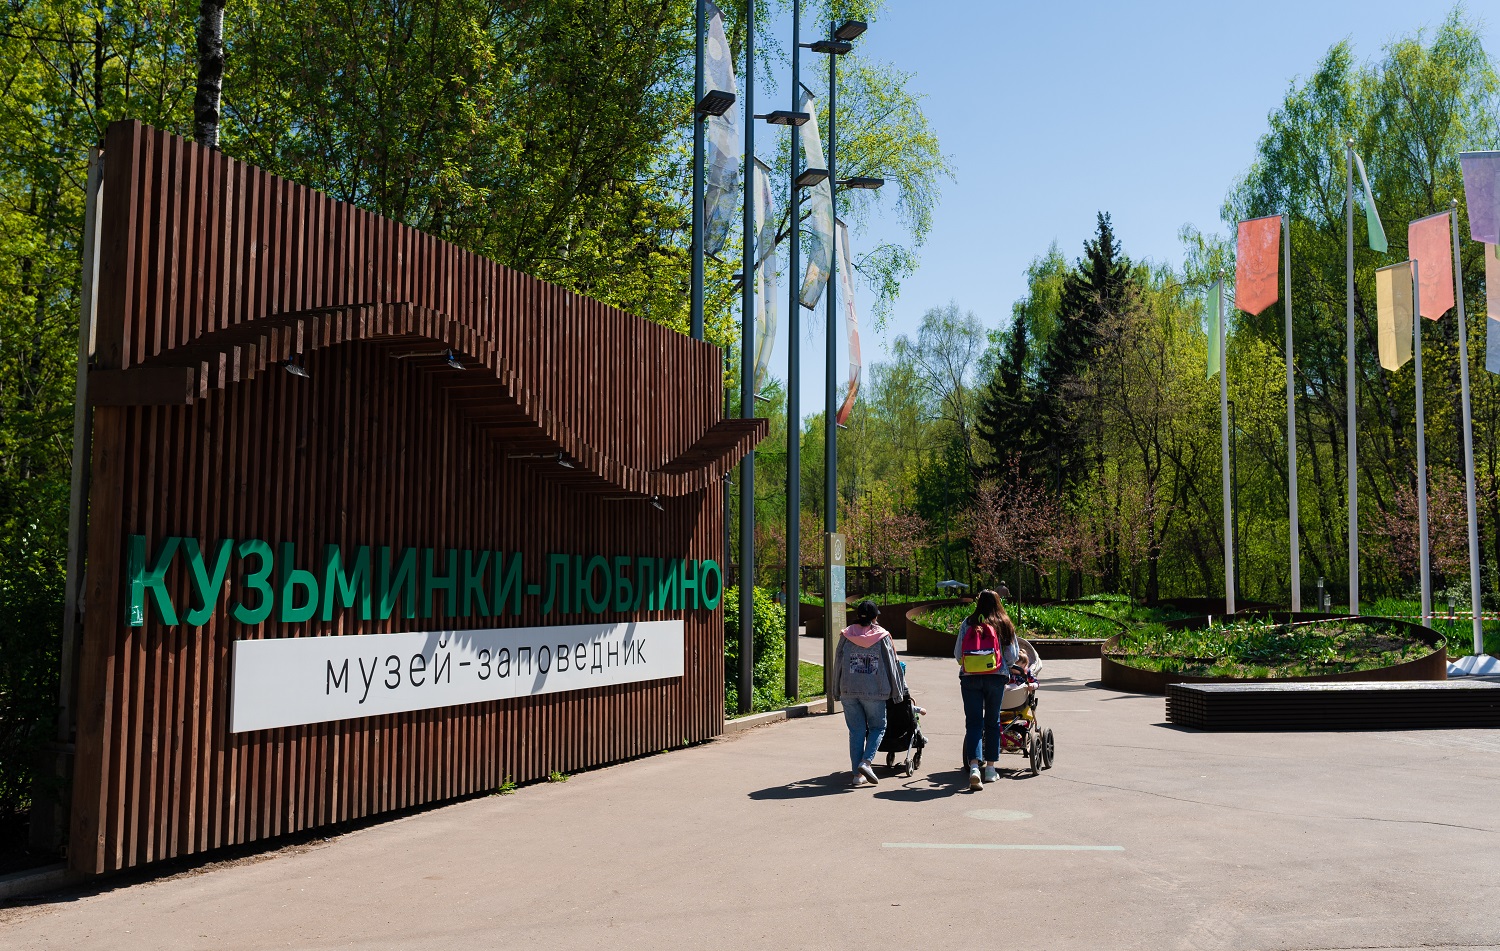 Детский конкурс талантов проведут в Кузьминском парке, фото